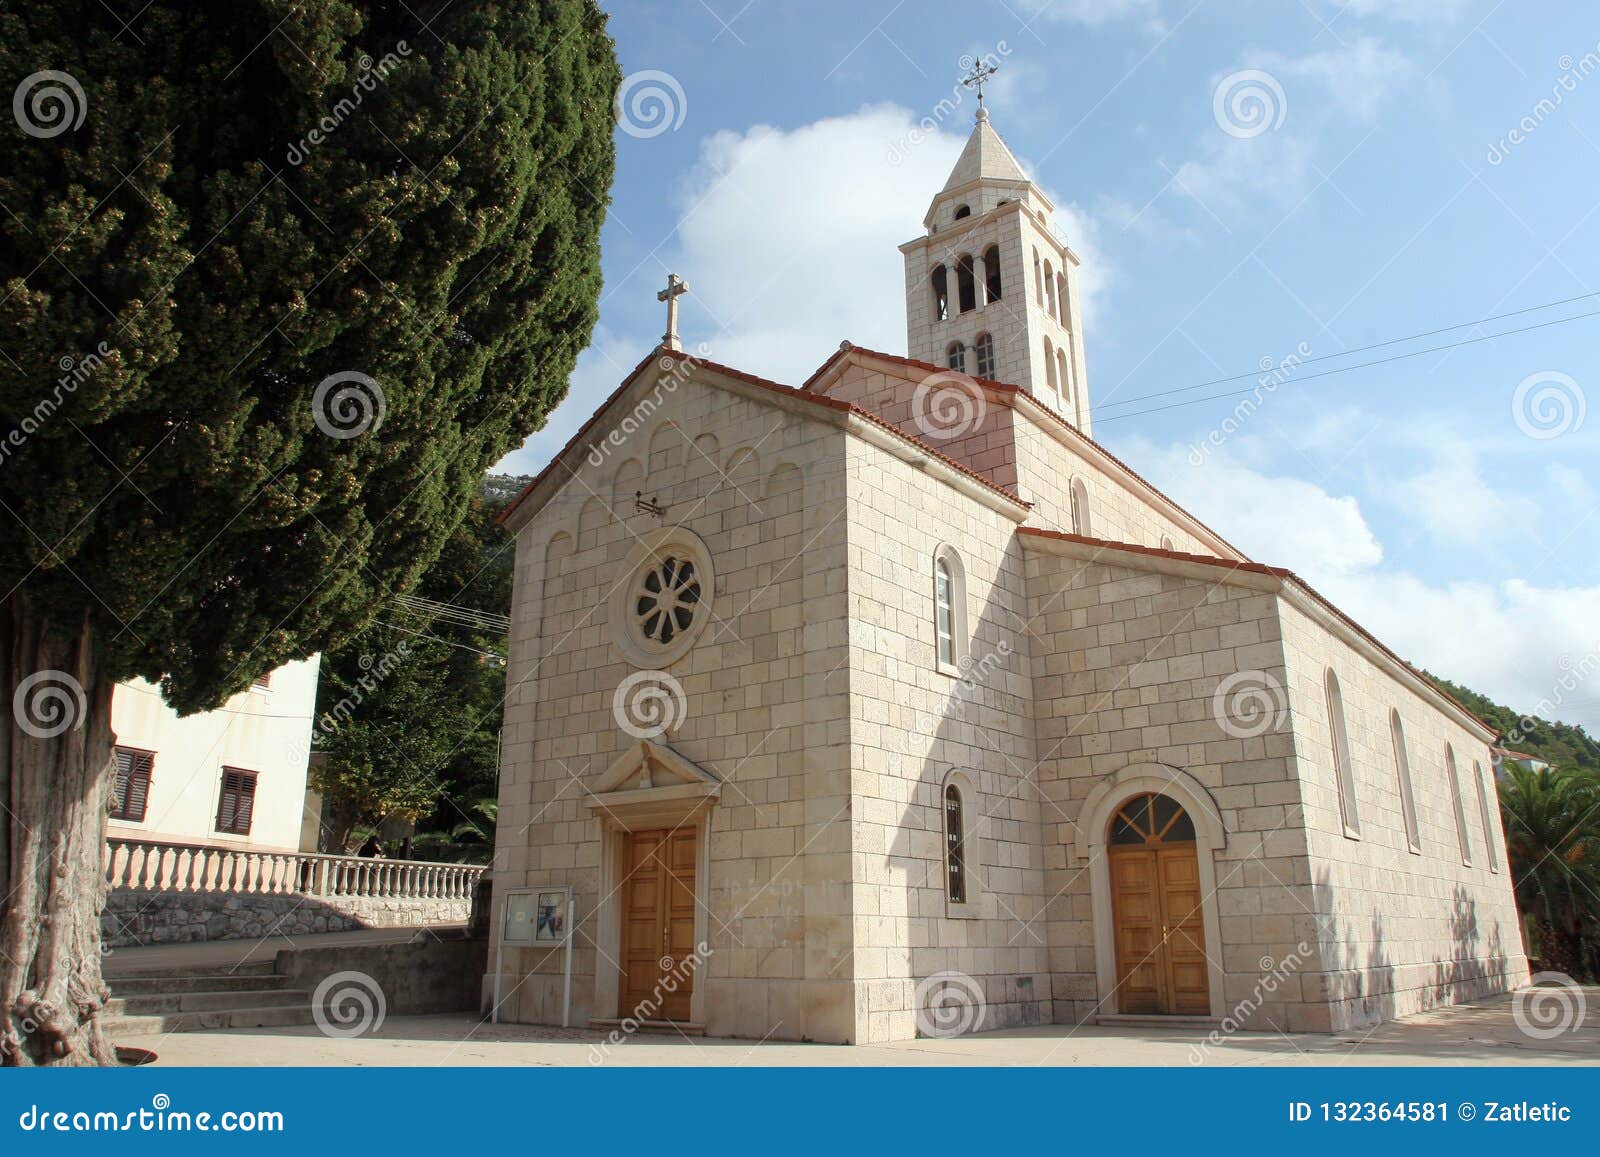 saint peter church in cara, croatia